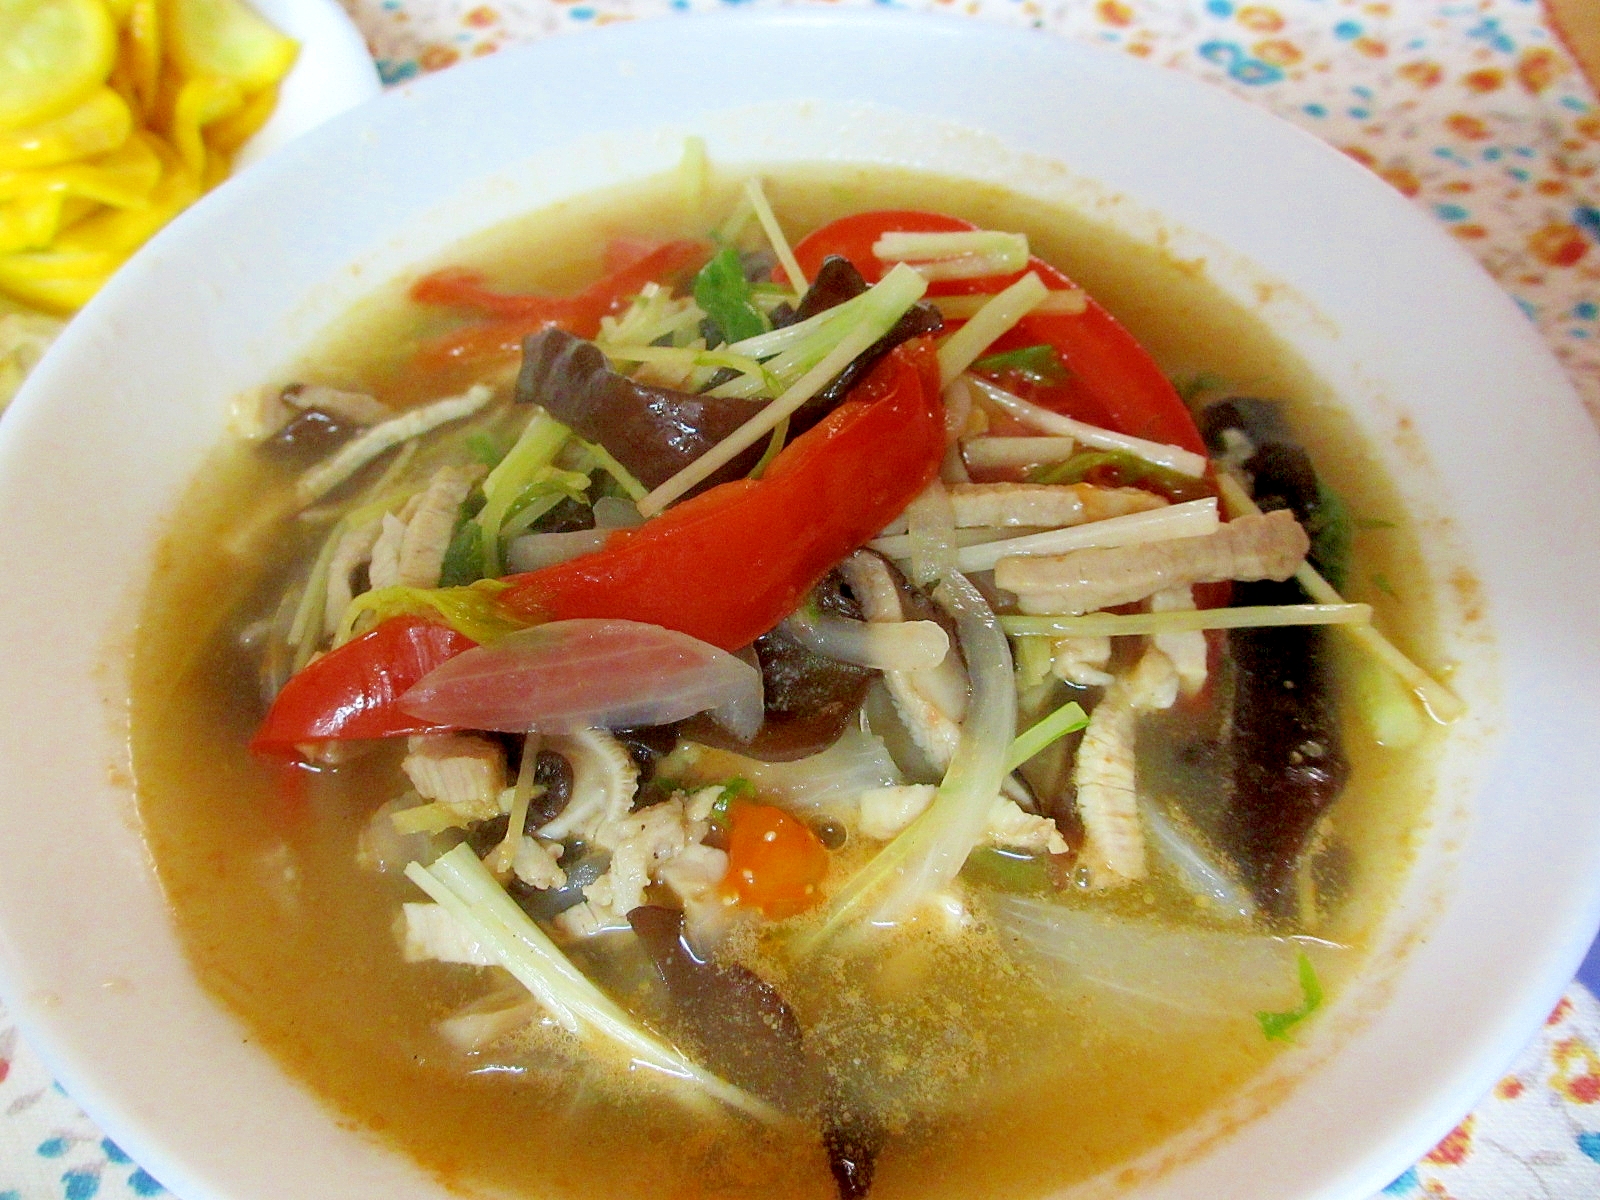 水菜とトマトのサンラータン風スープ